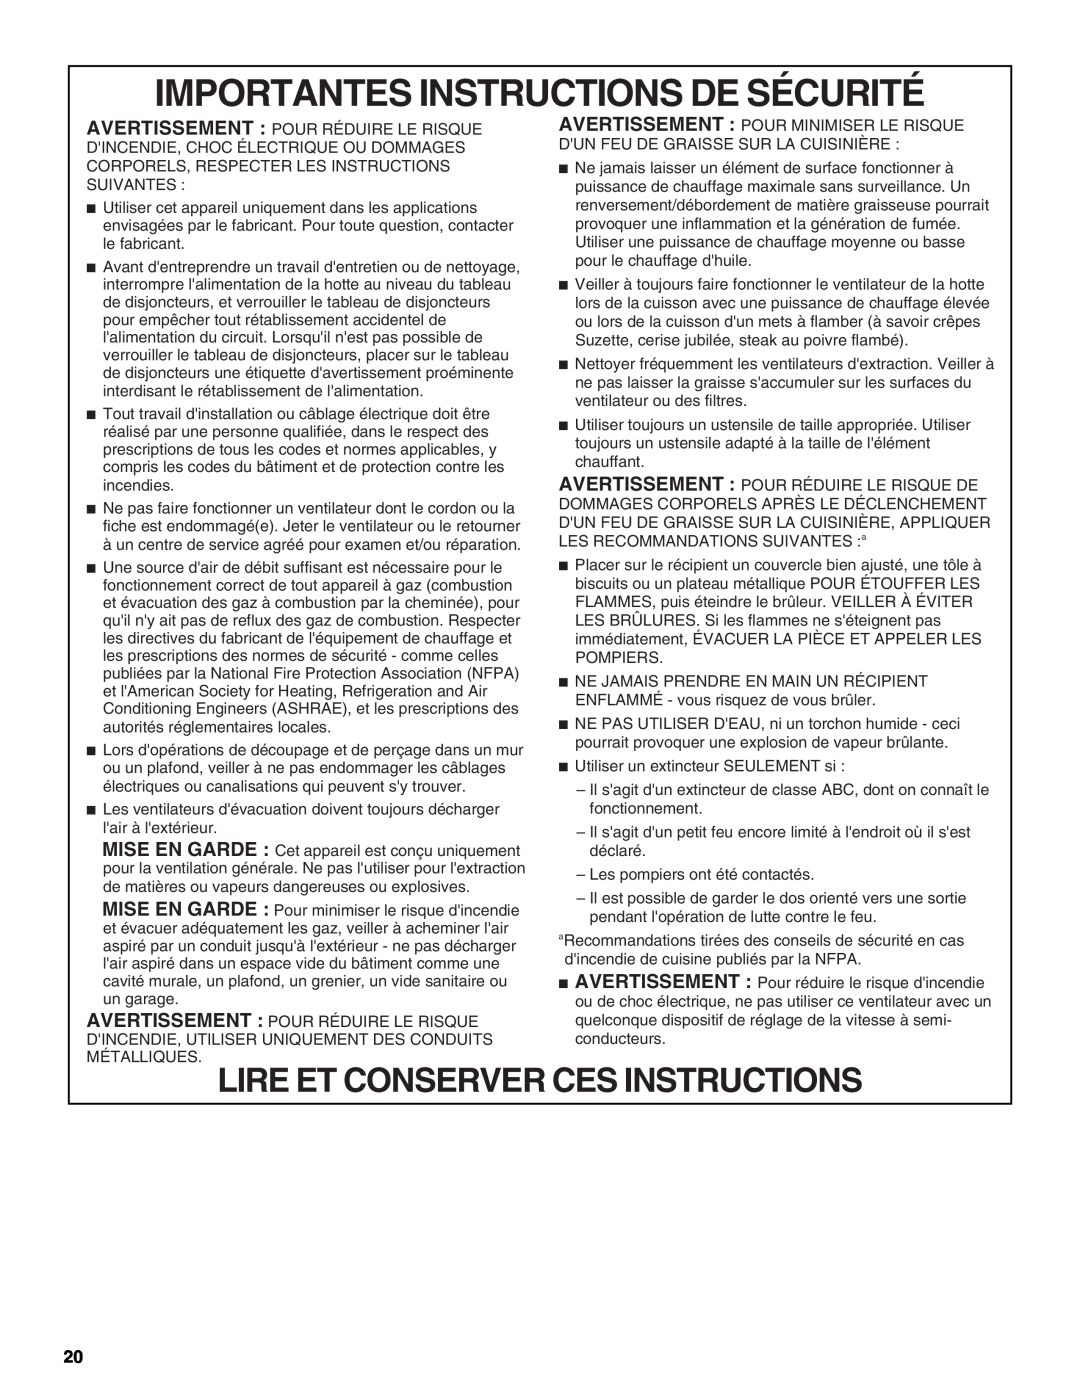 KitchenAid W10331007B installation instructions Importantes Instructions De Sécurité, Lire Et Conserver Ces Instructions 